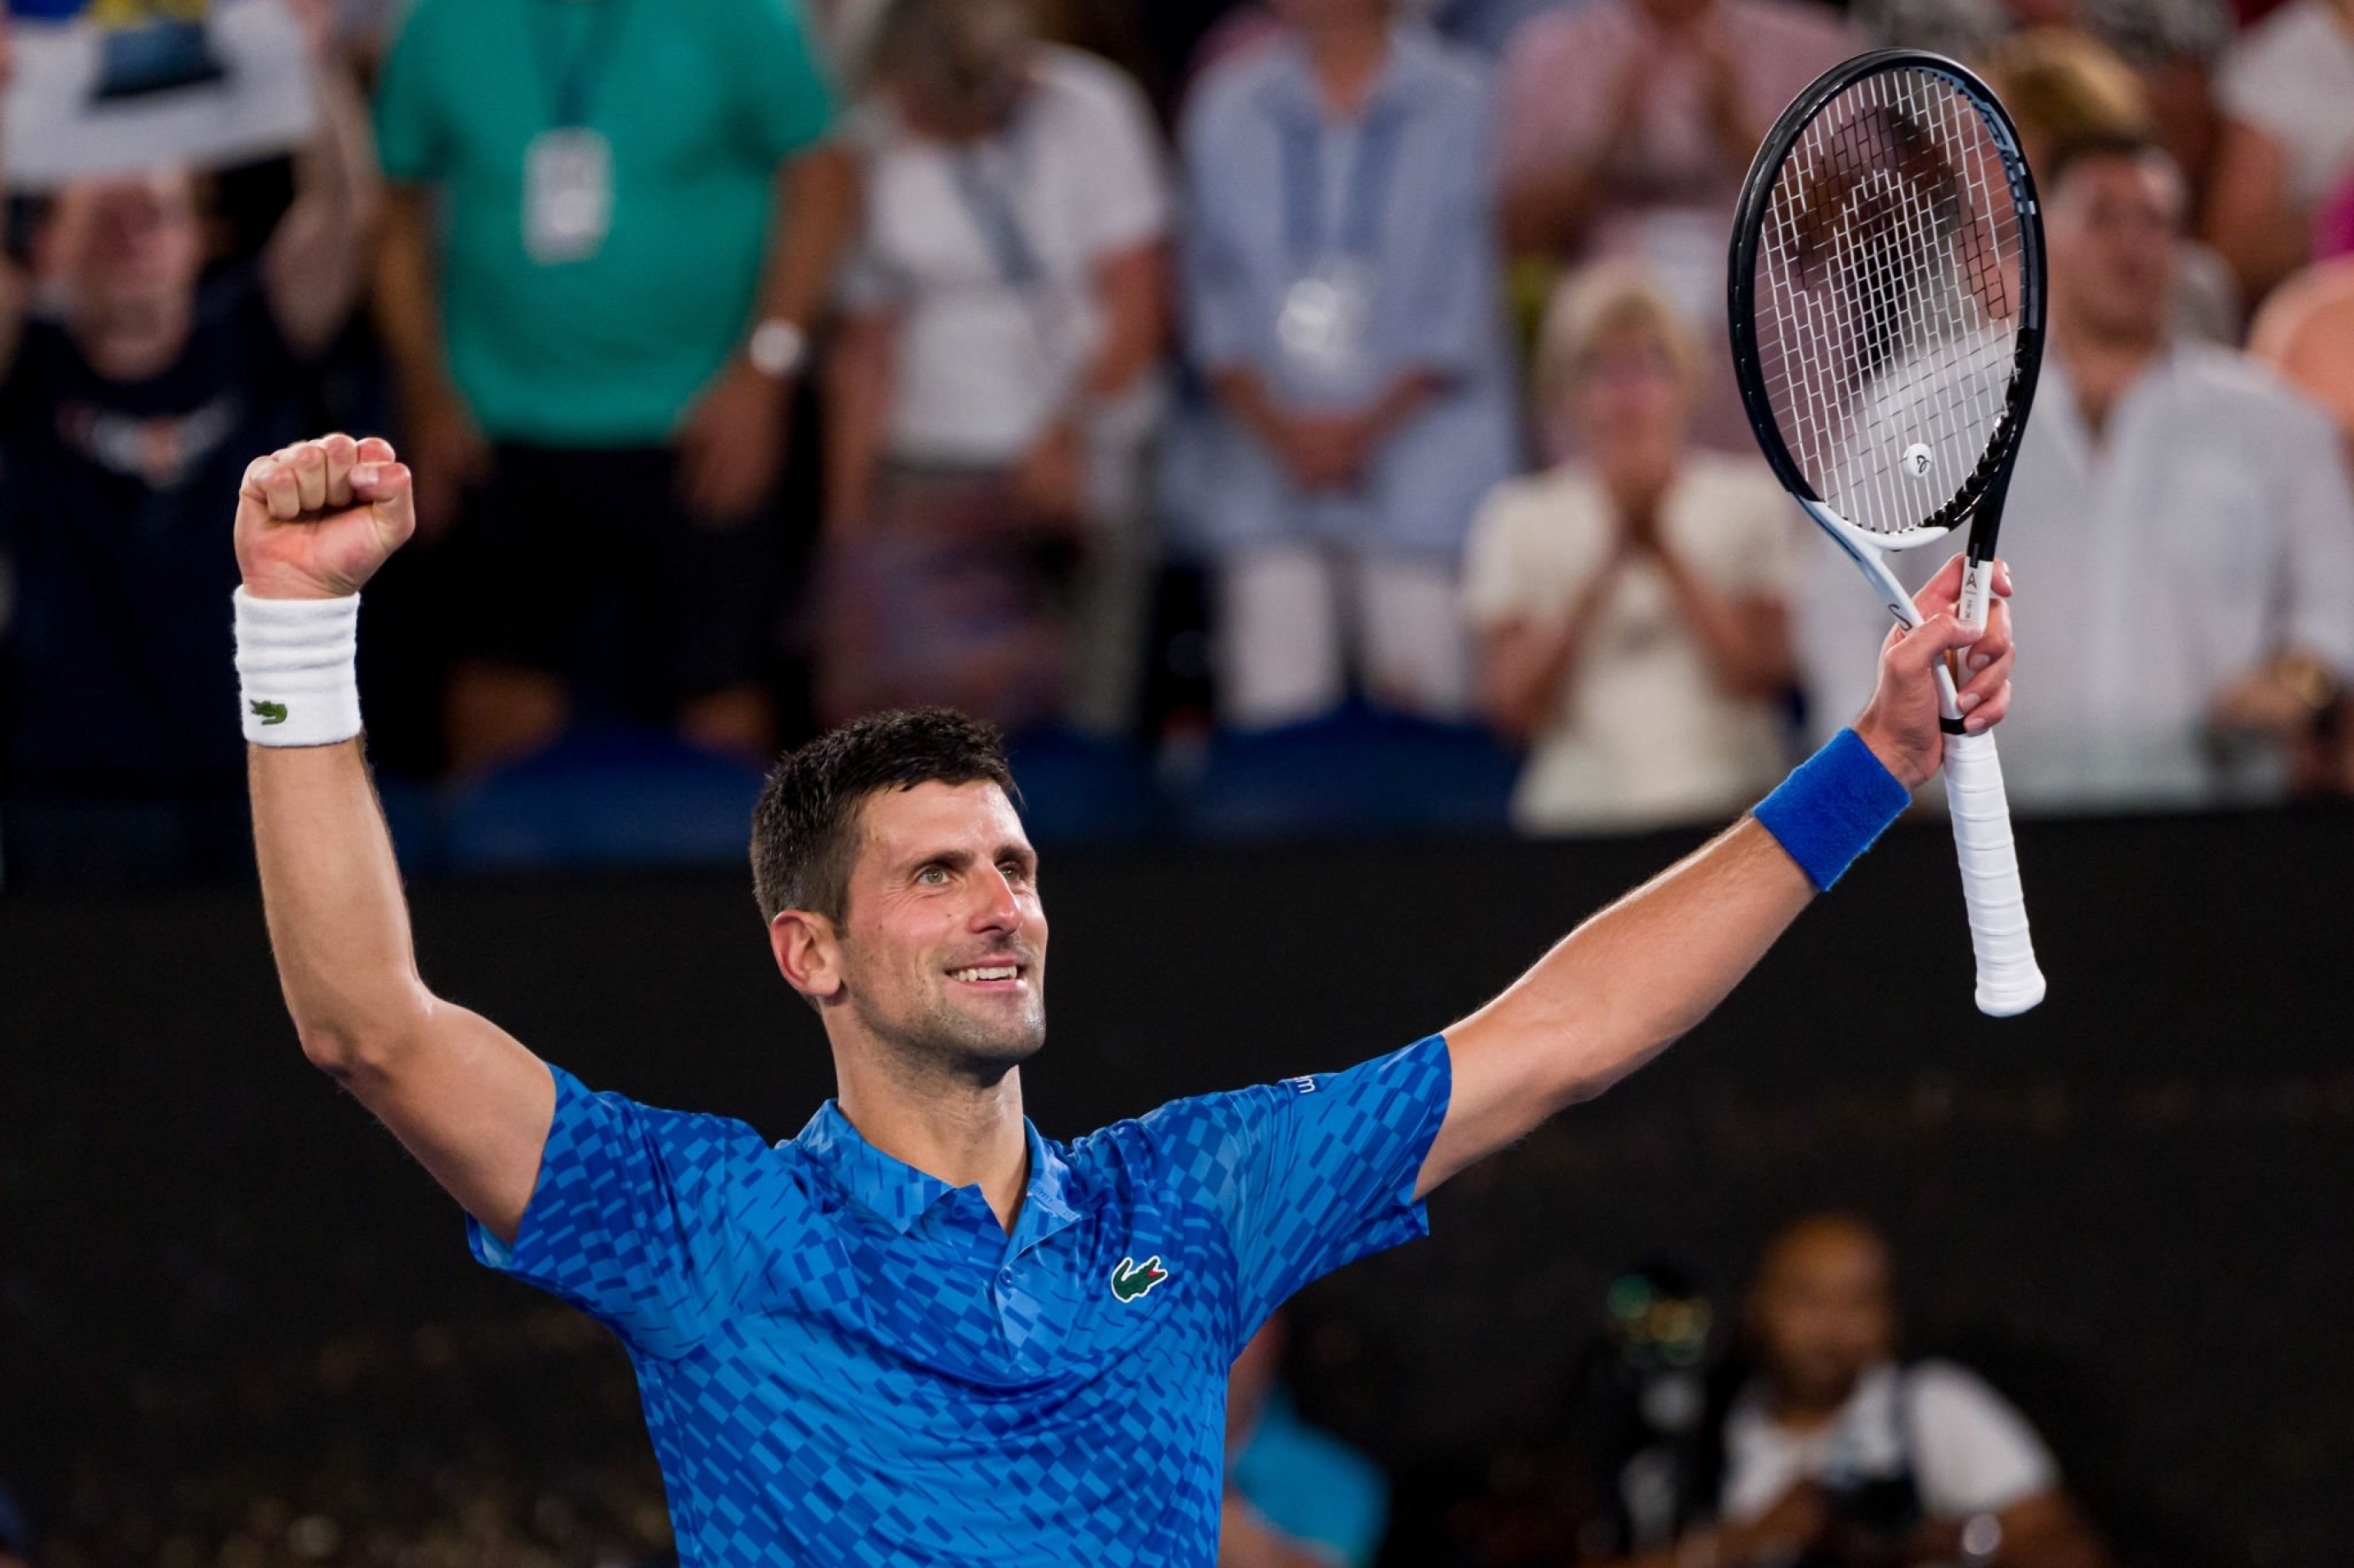 Peringkat Tenis: ‘Sungguh nyata’, kata Novak Djokovic saat ia menciptakan sejarah Tenis, memecahkan rekor Steffi Graf selama berminggu-minggu dihabiskan sebagai No.1 Dunia